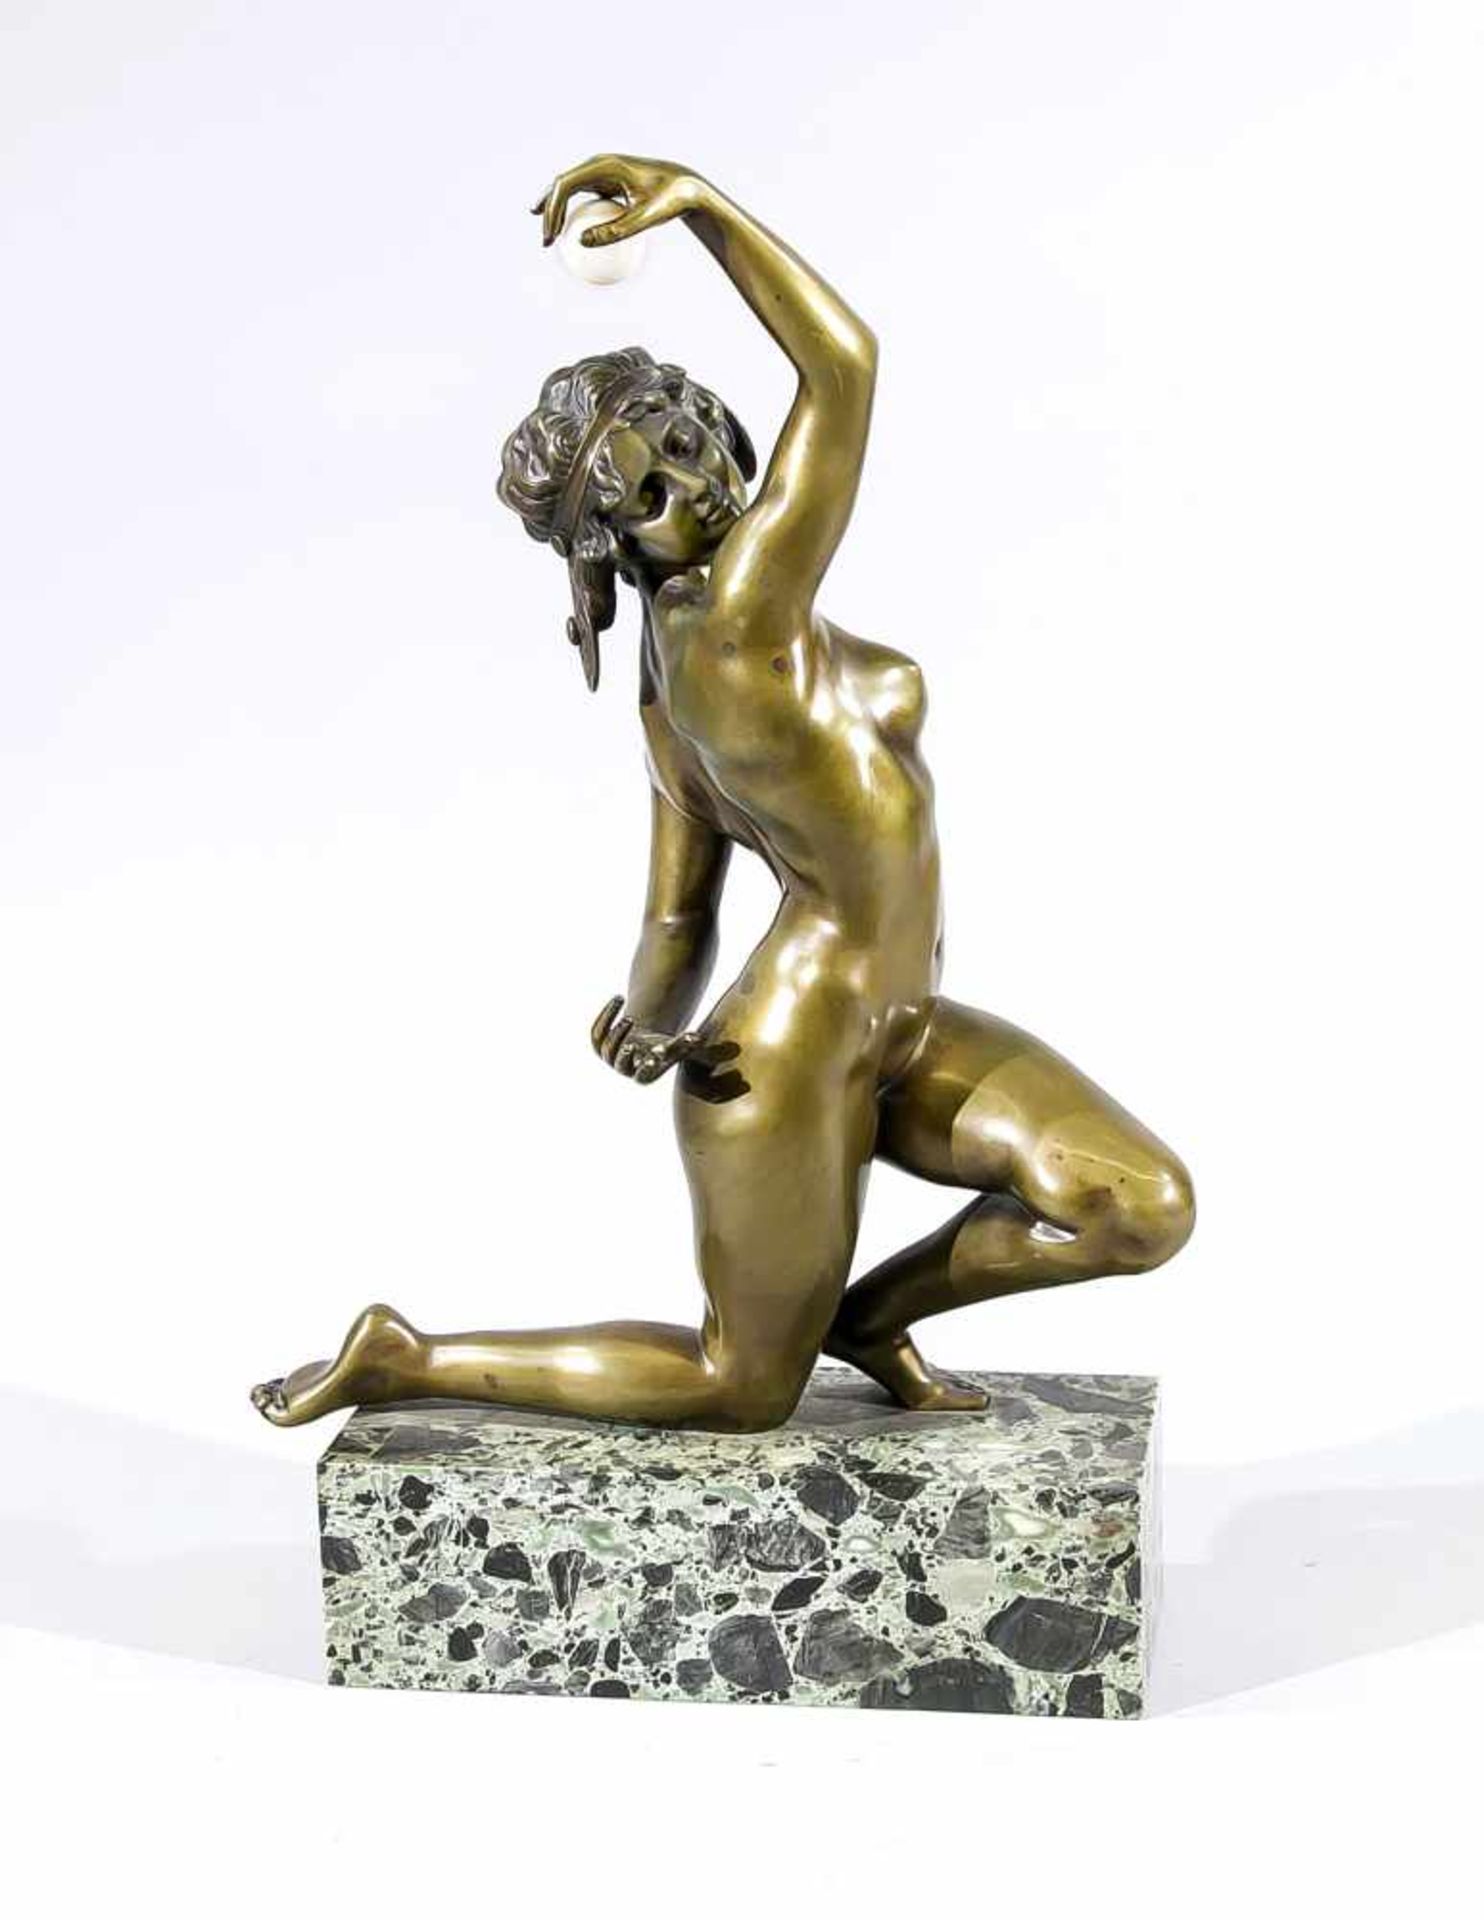 Affortunato Gory (tätig ca. 1895-1925), Bildhauer in Florenz, kniender weiblicher Akt miteiner